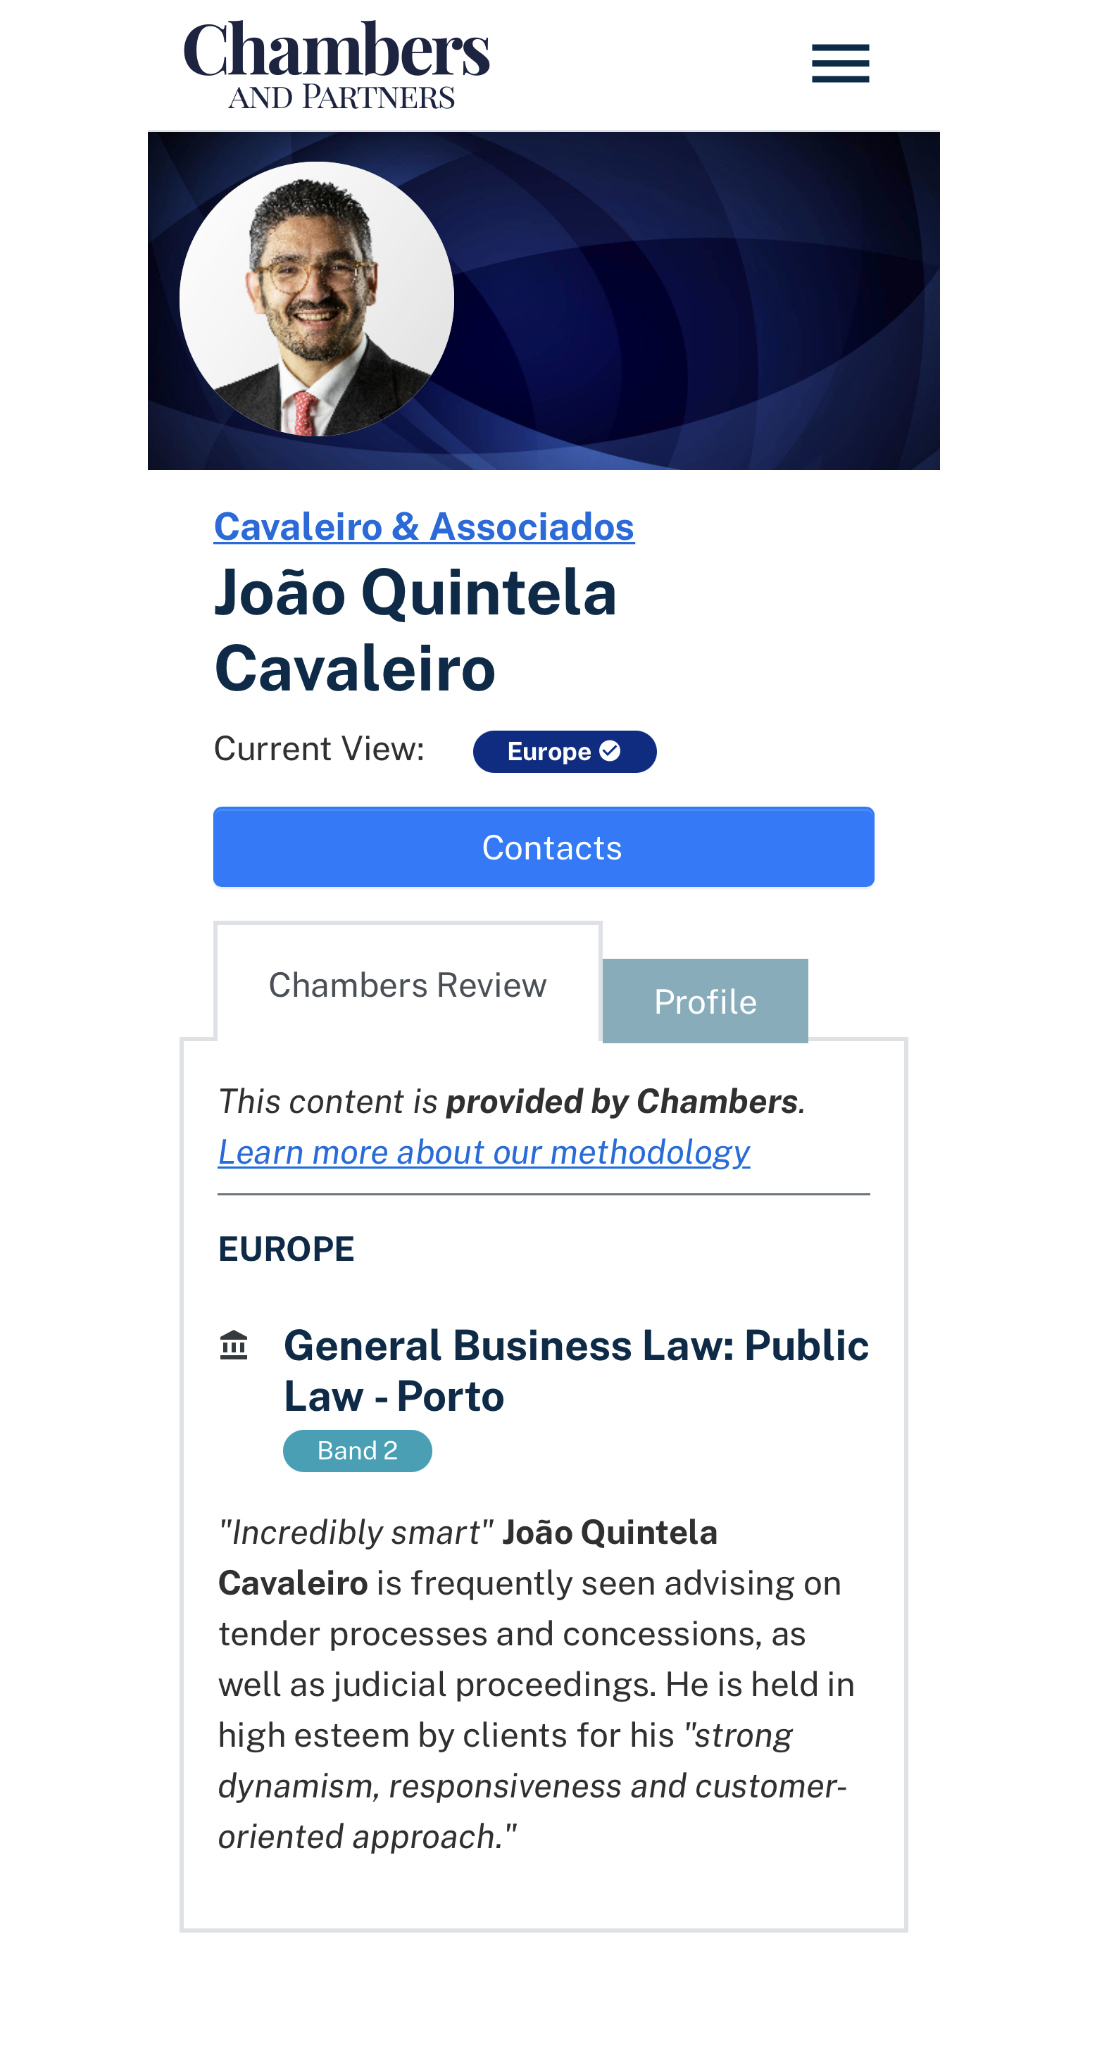 Chambers and Partners_João Quintela Cavaleiro_Cavaleiro & Associados